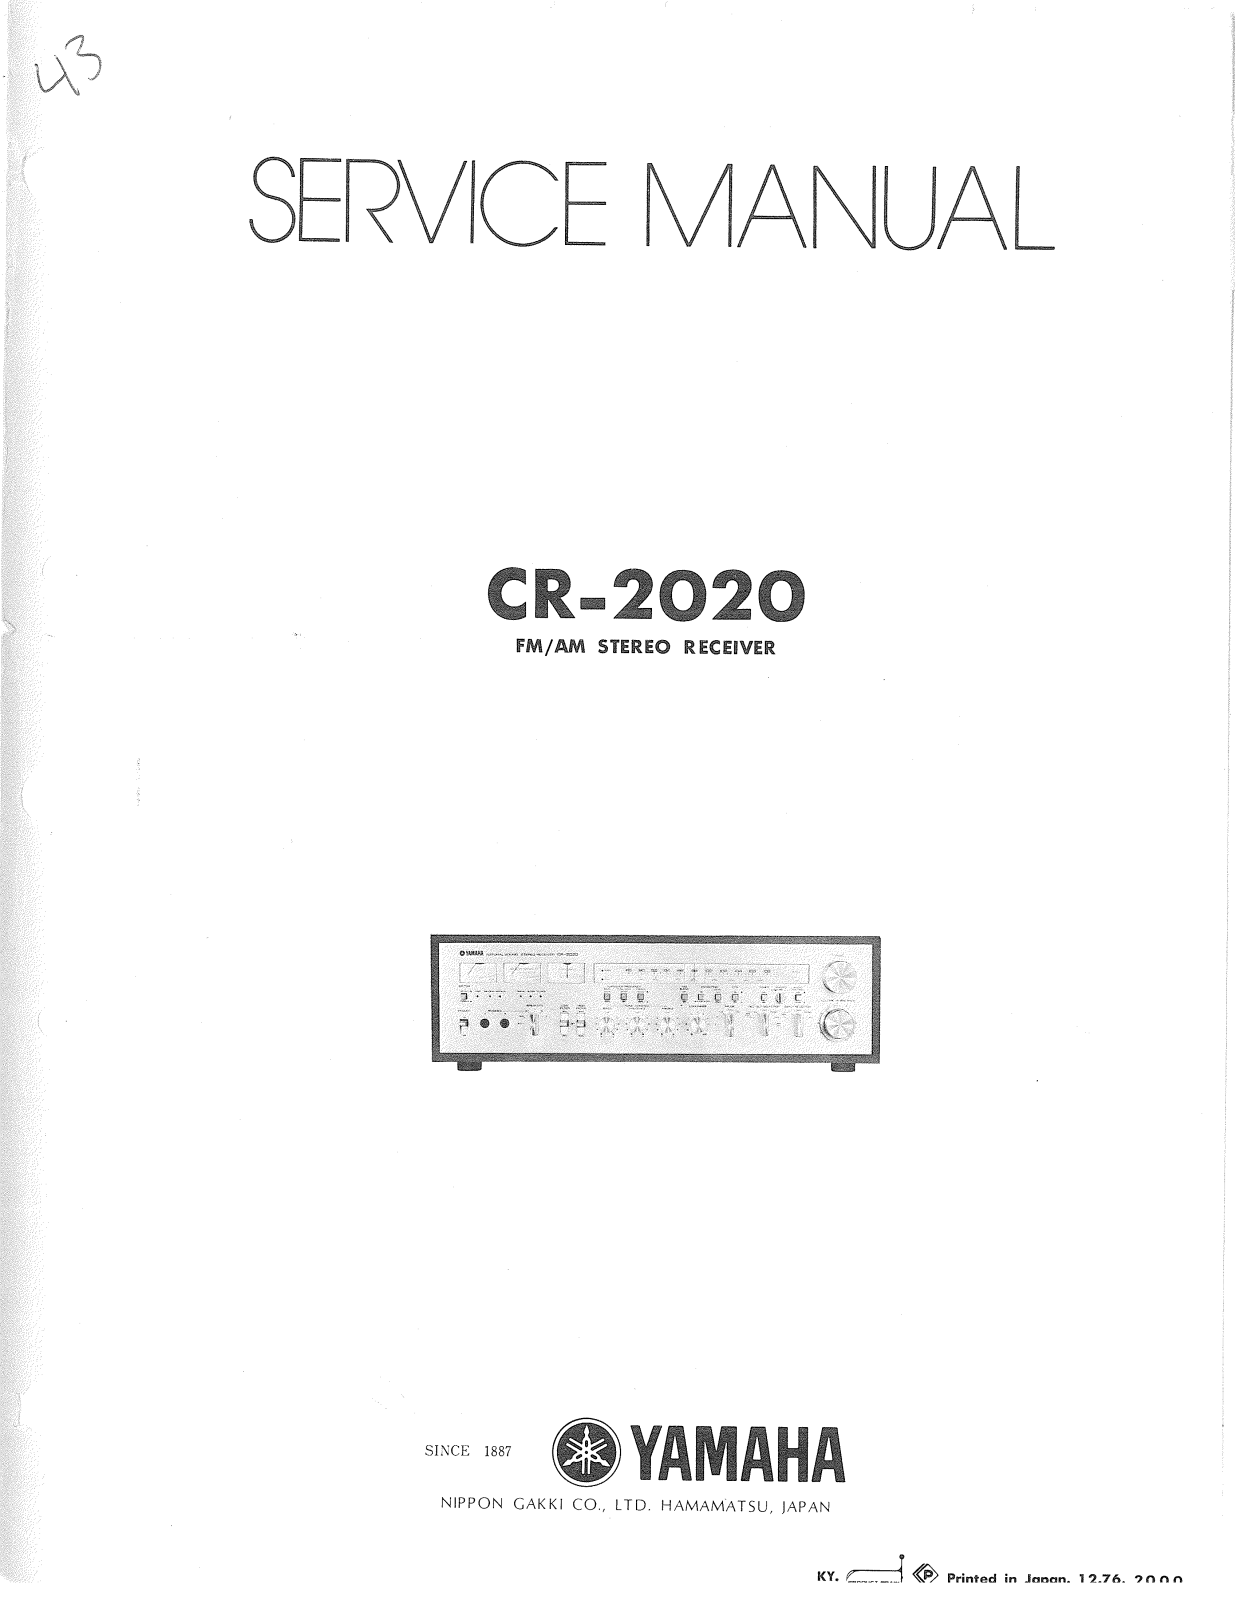 Yamaha CR-2020 Service Manual